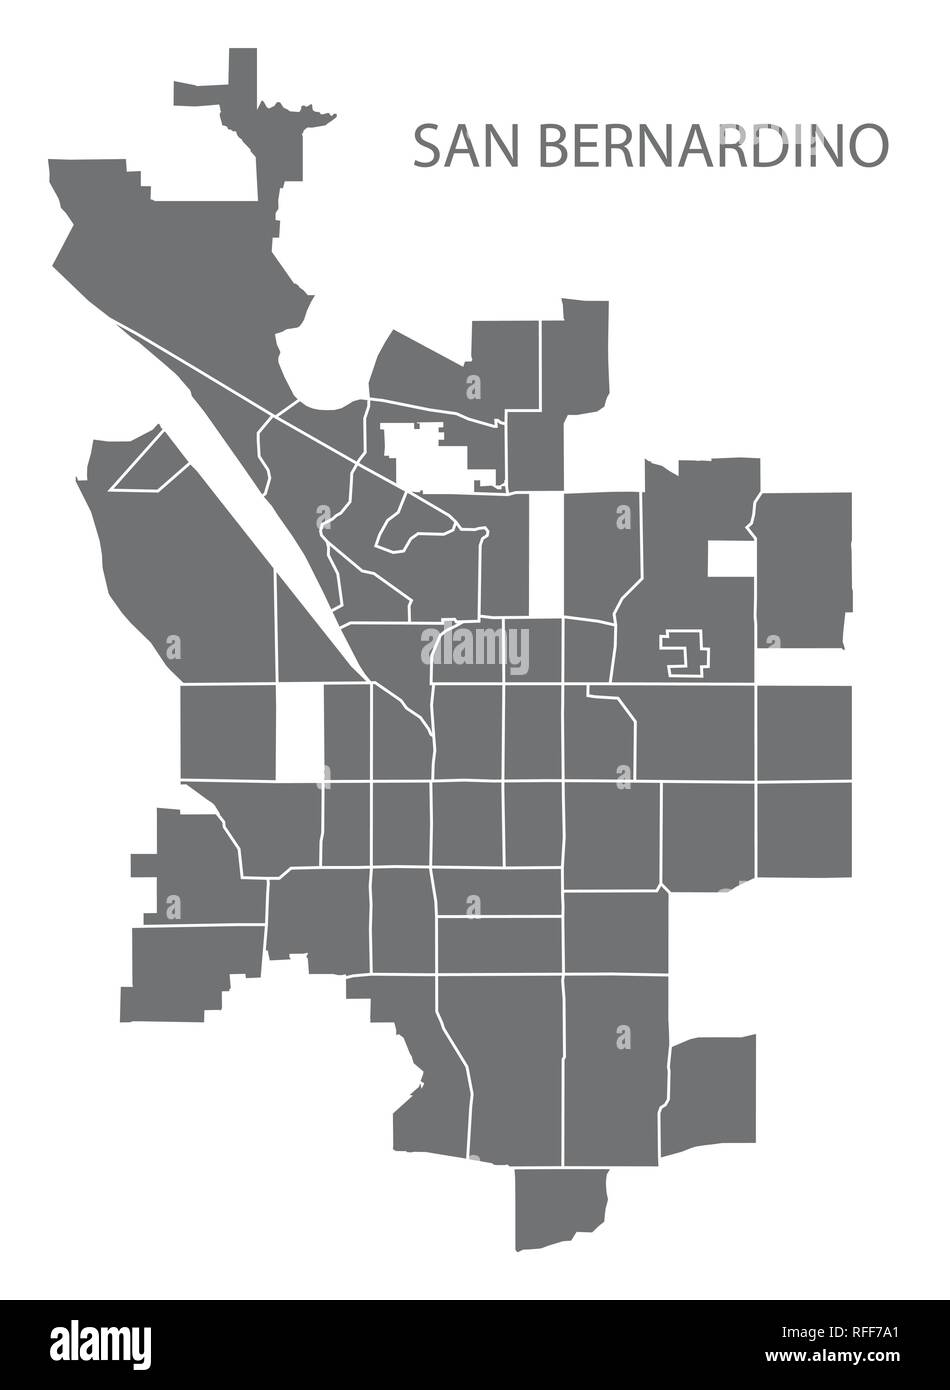 San Bernardino California mappa della città con i quartieri grigio illustrazione forma silhouette Illustrazione Vettoriale